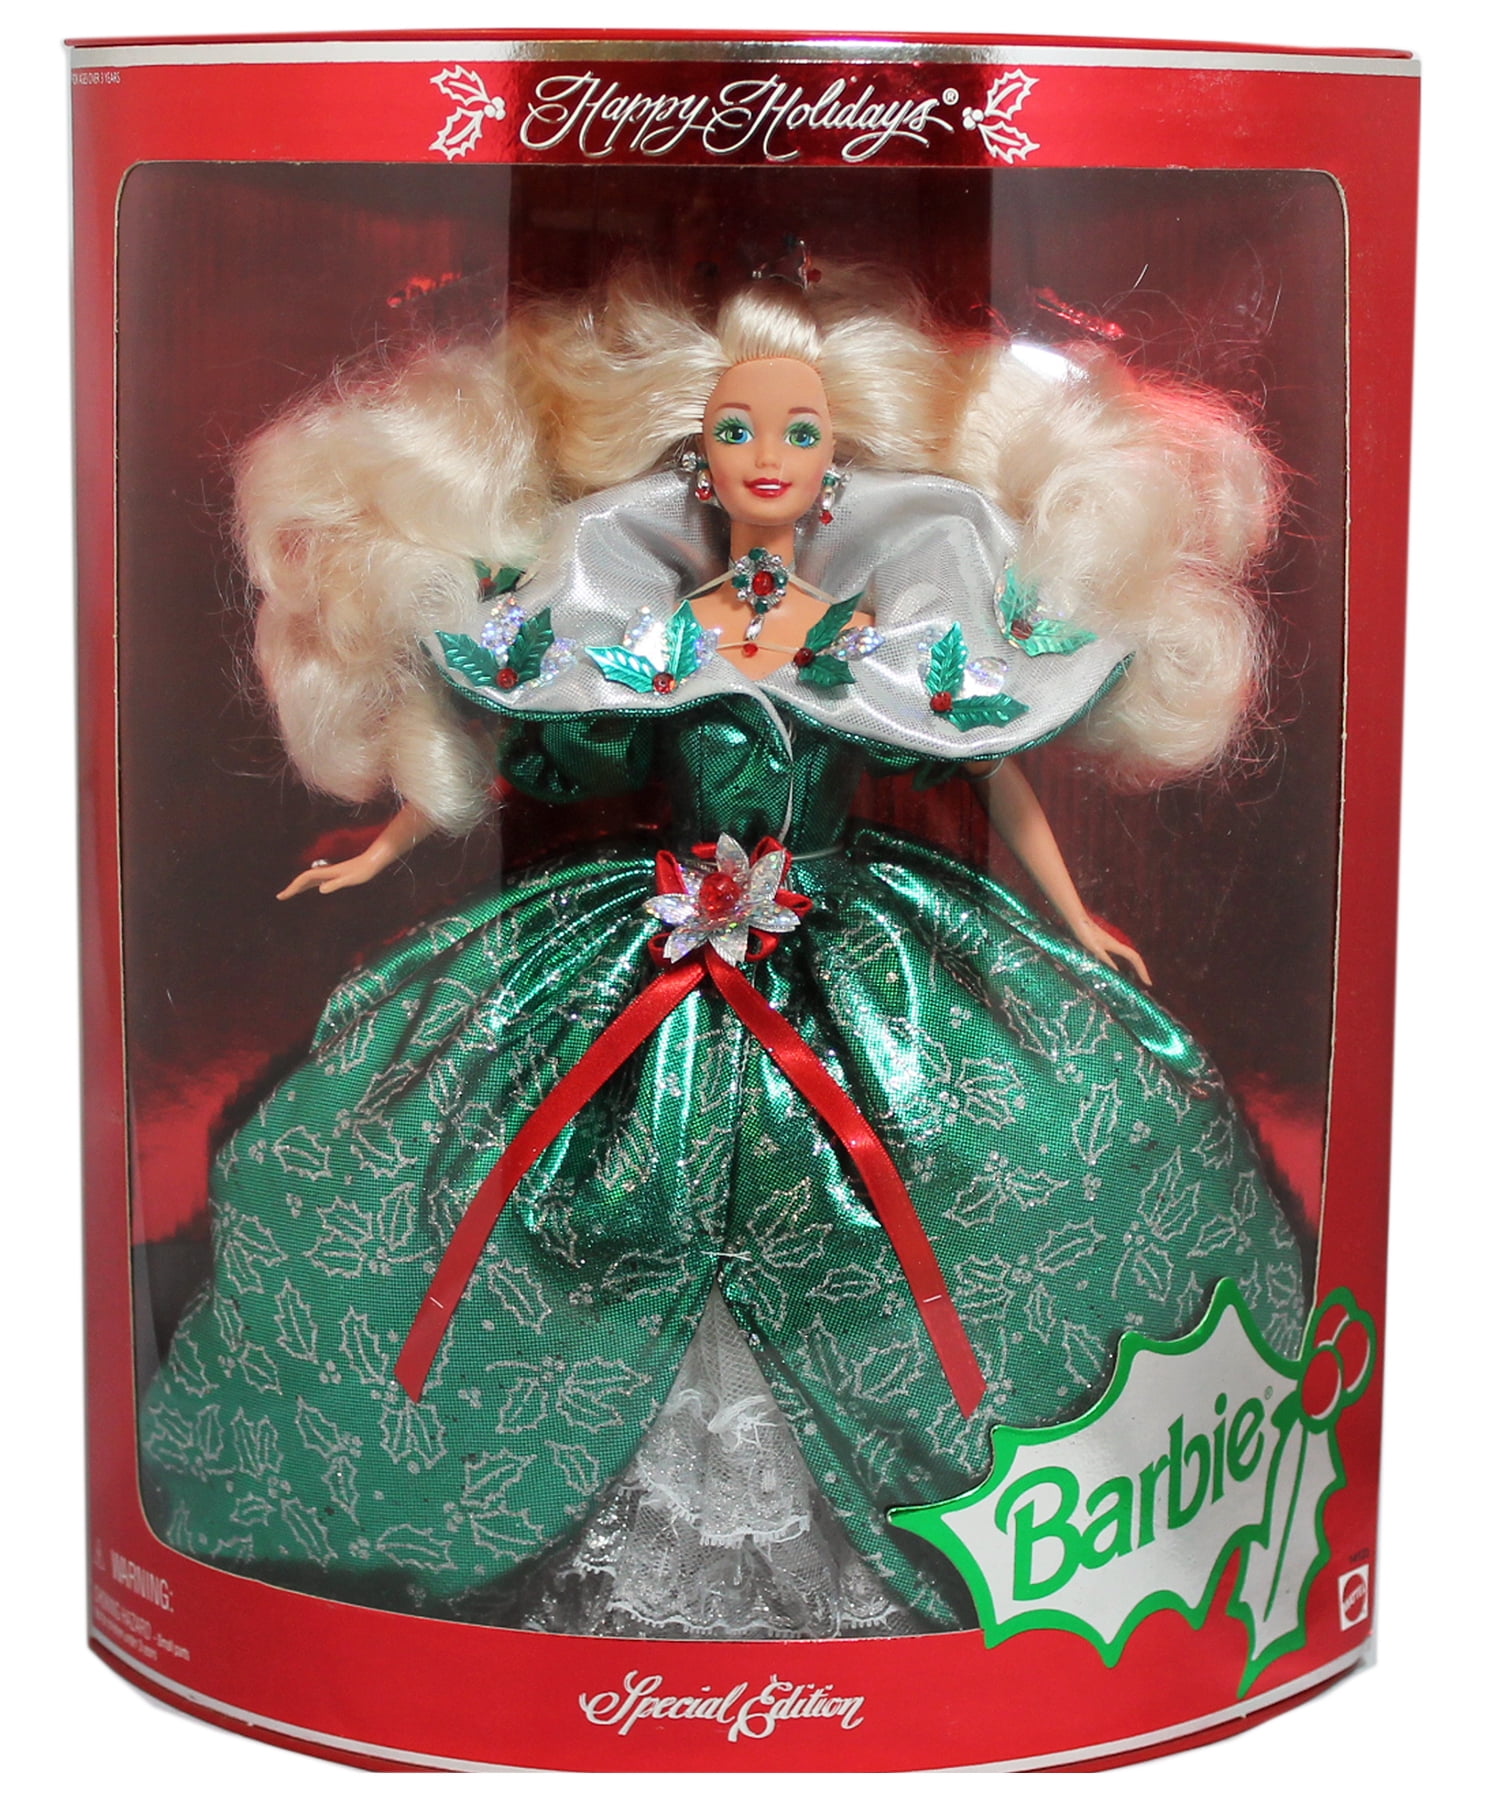 Verlichting erven daarna 1995 Happy Holidays Barbie - 14123 - Walmart.com